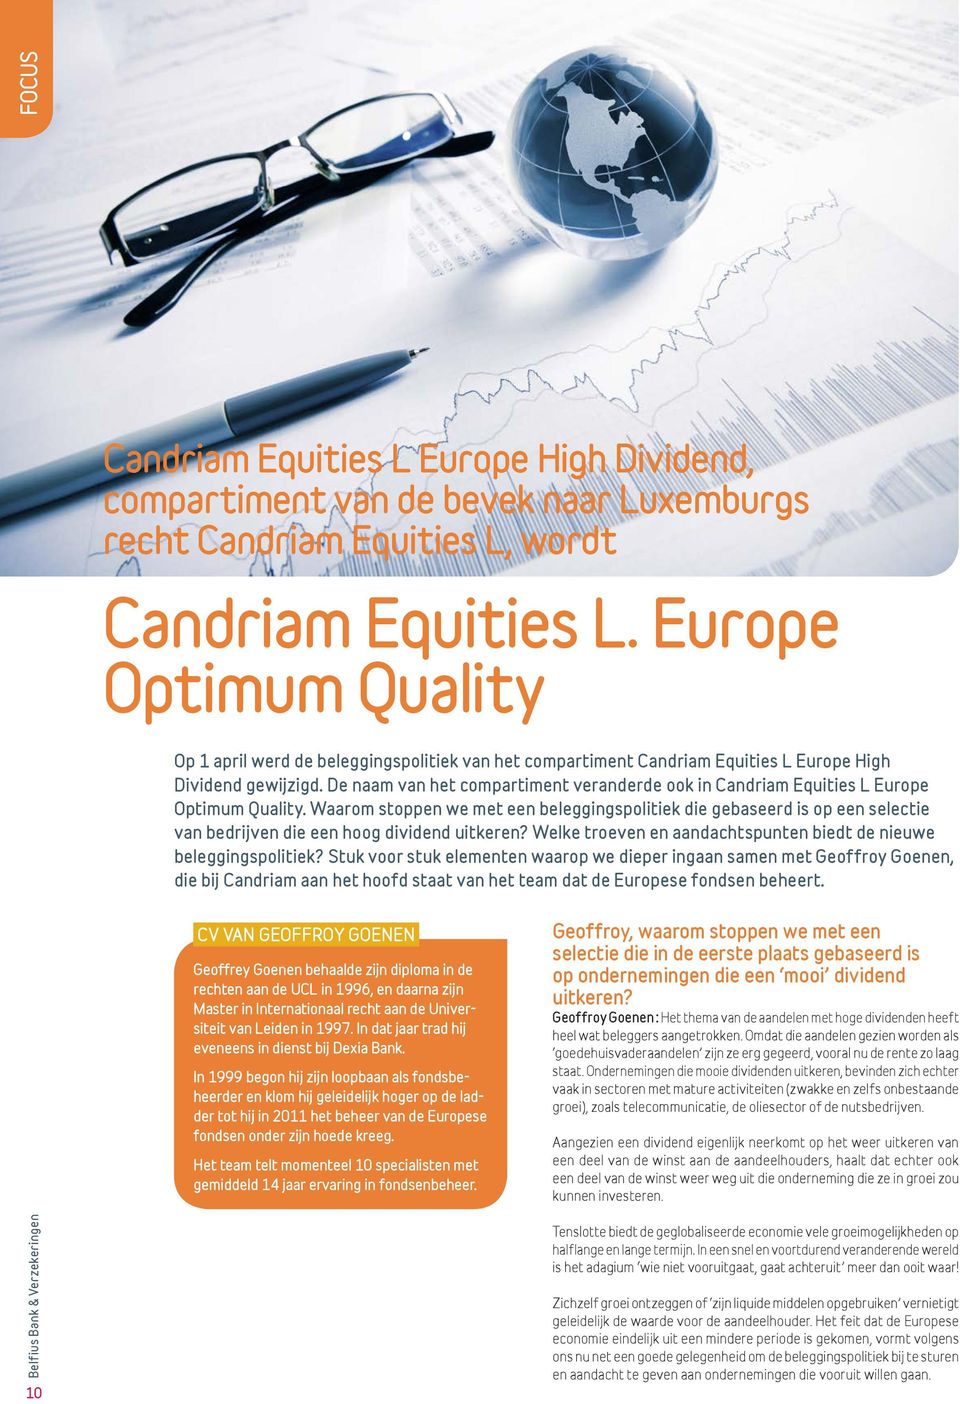 De naam van het compartiment veranderde ook in Candriam Equities L Europe Optimum Quality.